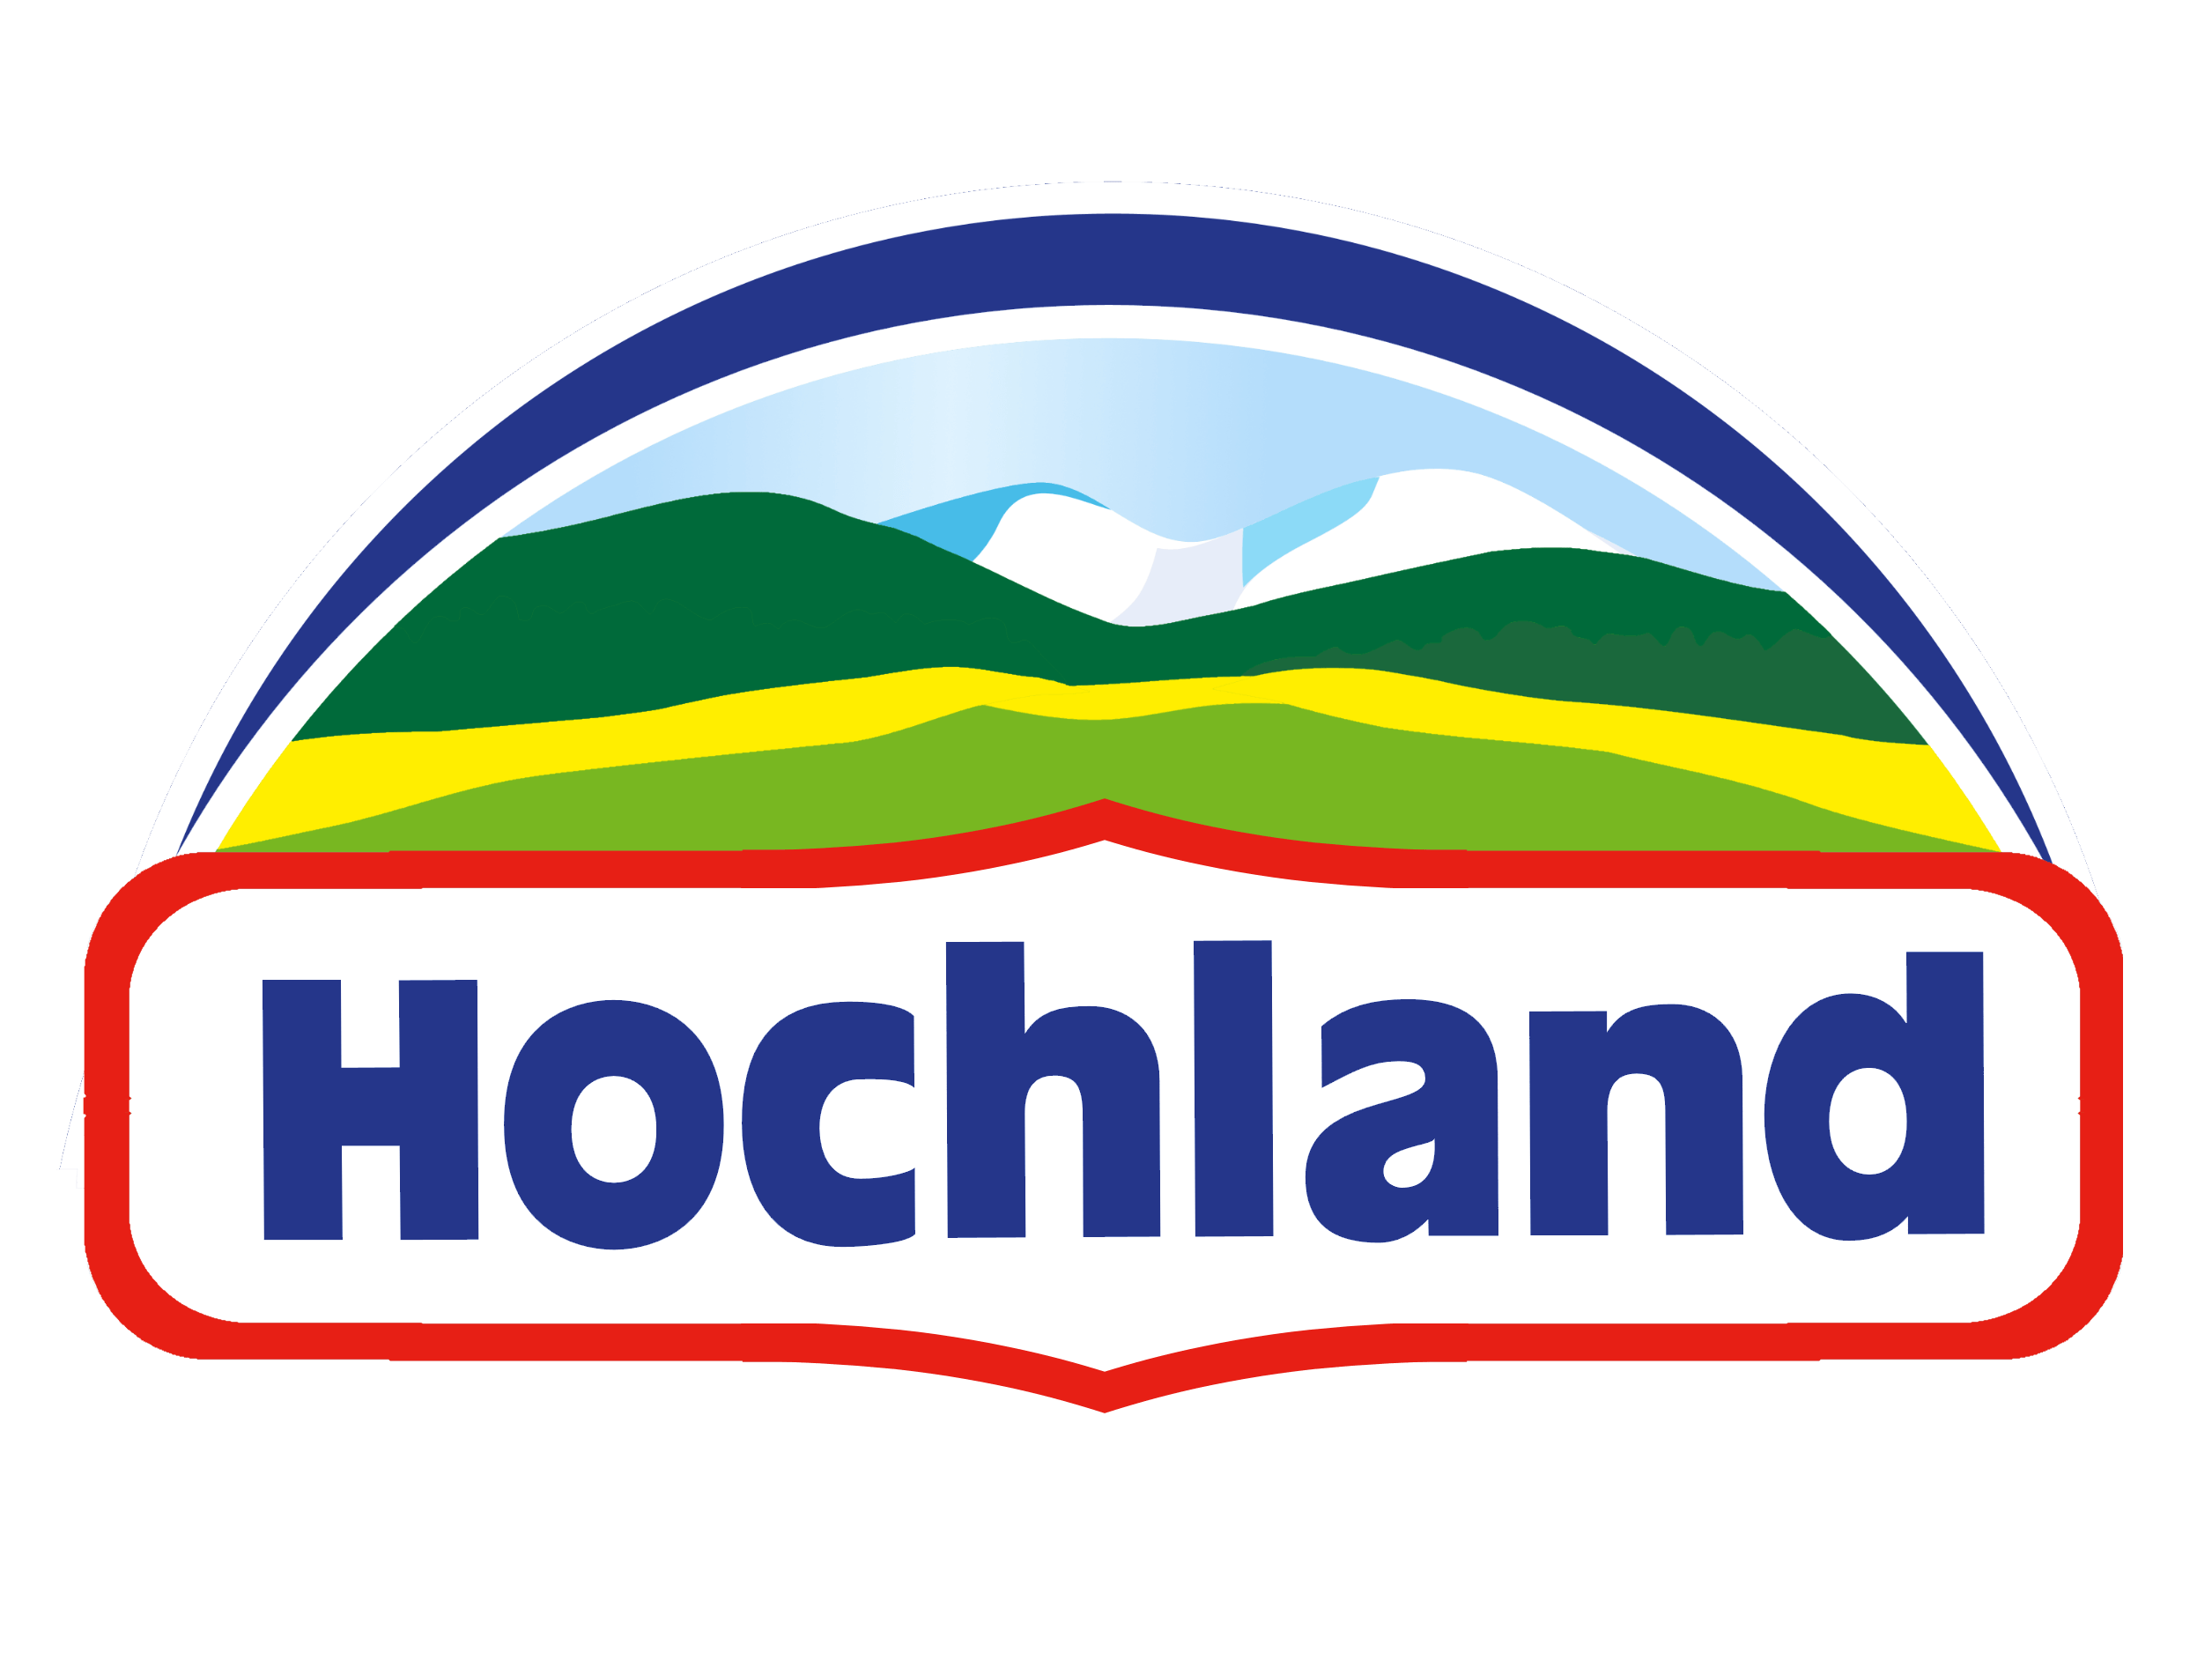 Hochland logo, logotype